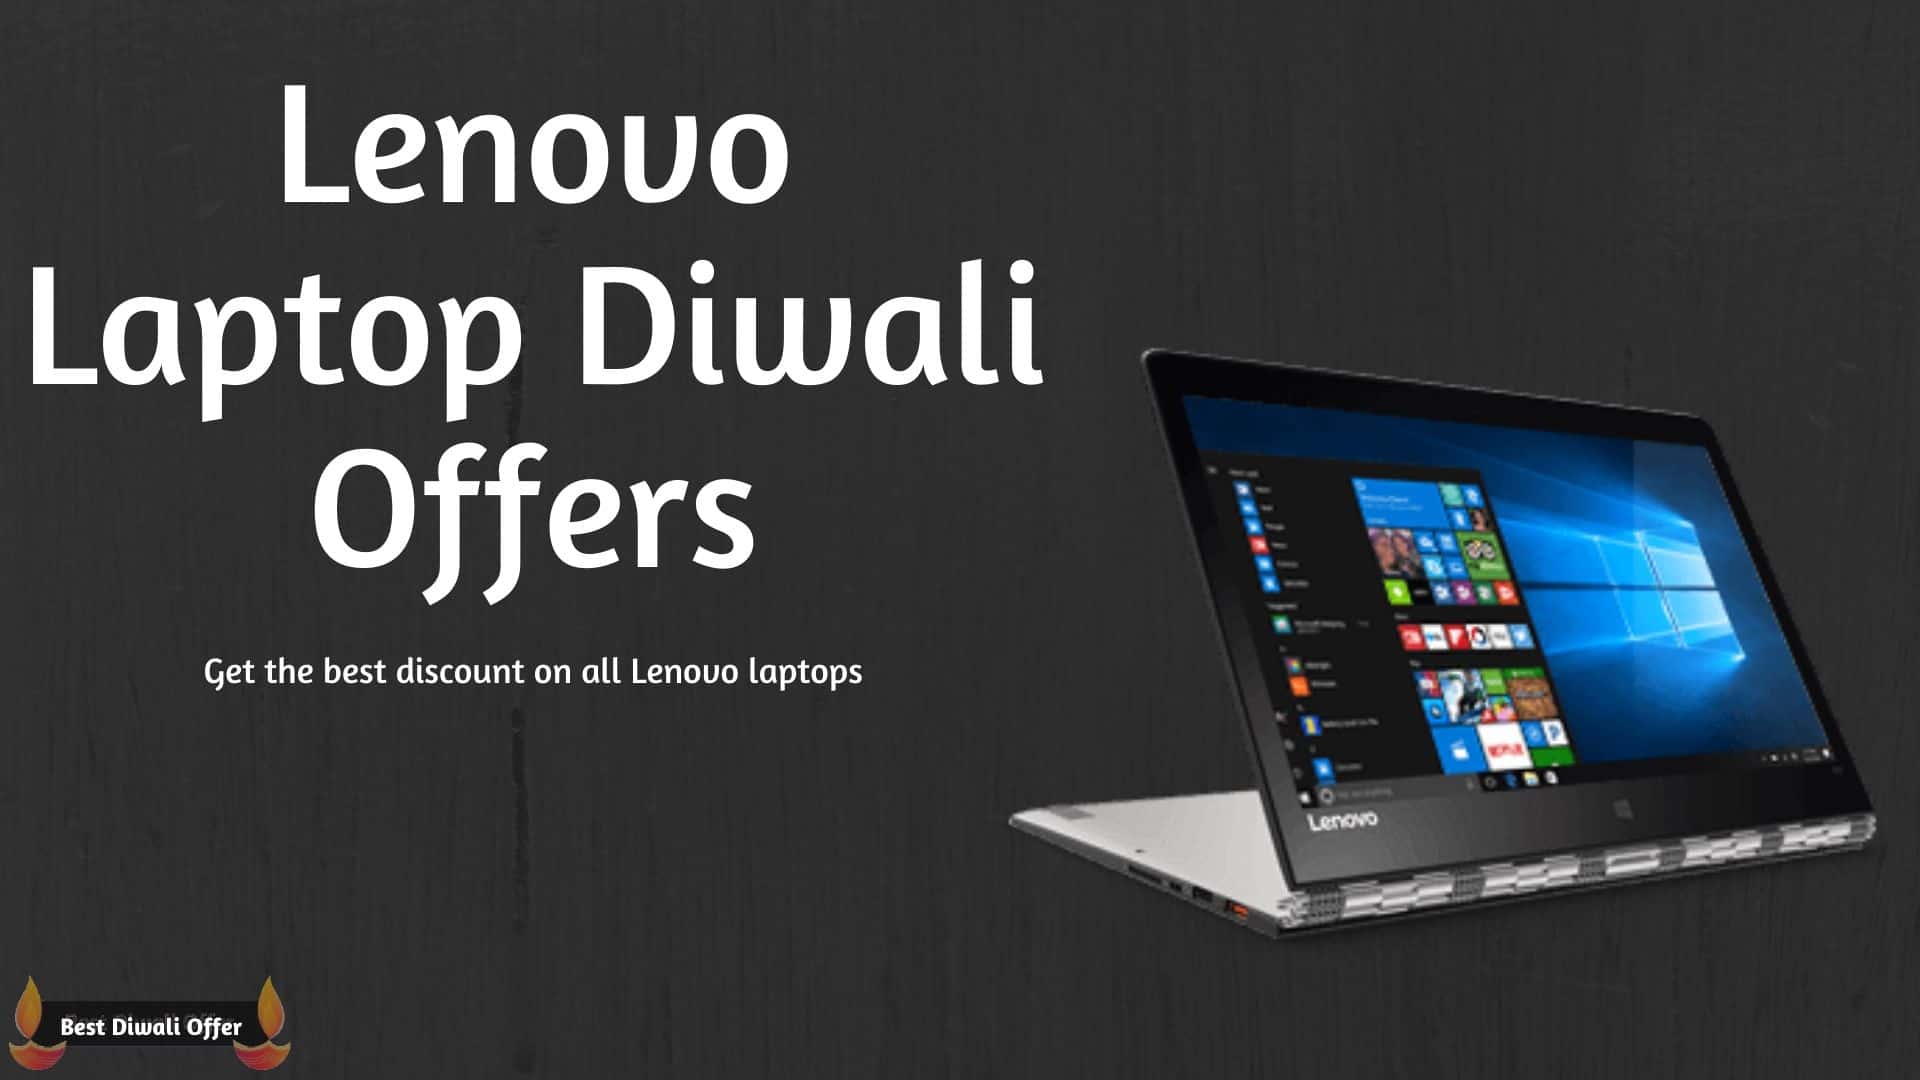 Lenovo Laptop Diwali Offer